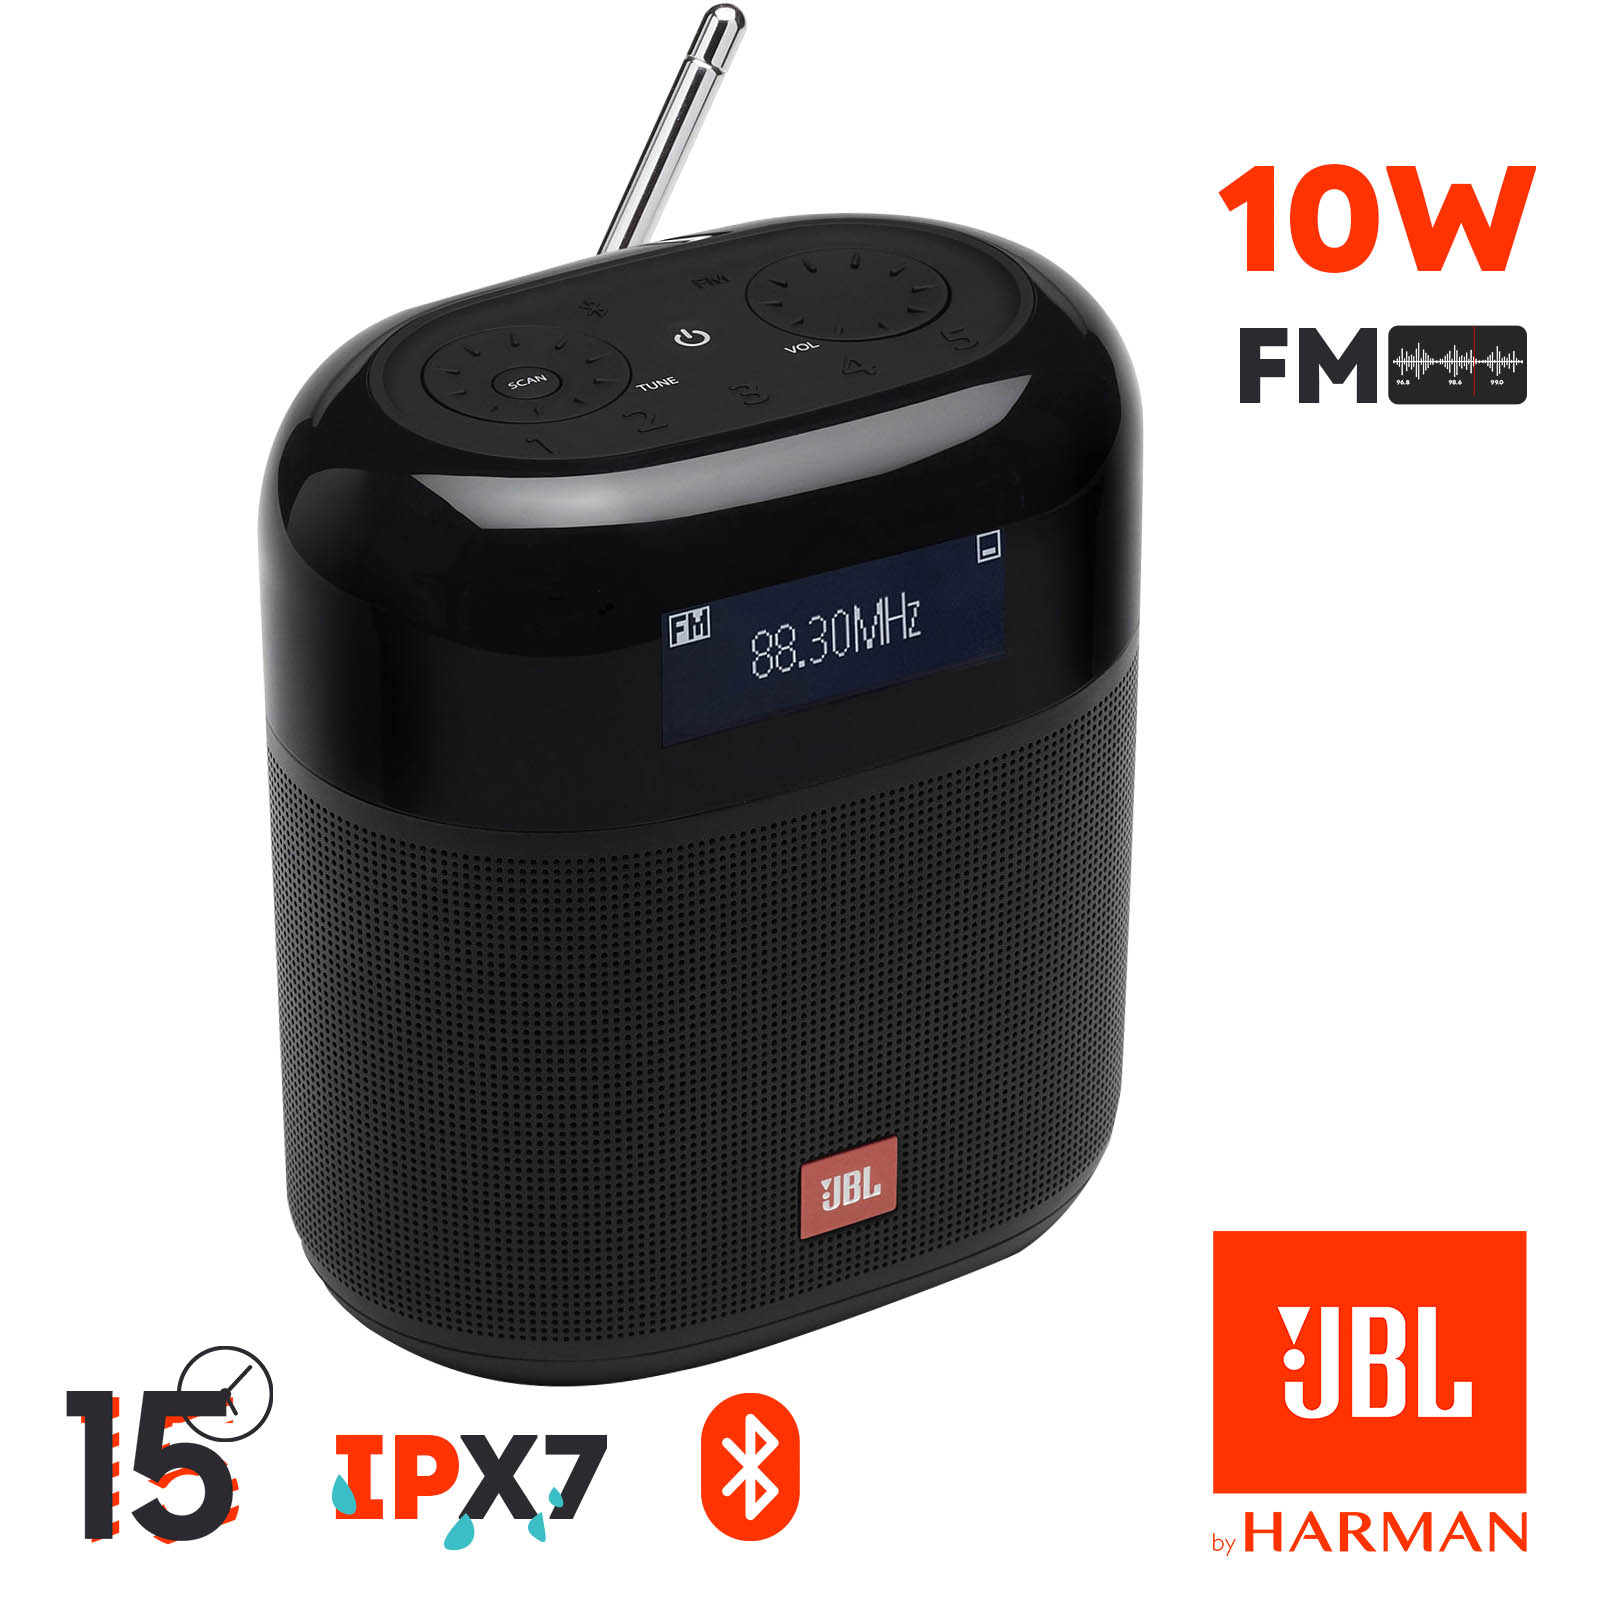 Enceinte Radio JBL Bluetooth 4.2 Son Cristallin Étanche IPX7, Écran LCD et  Autonomie 15h , TUNER XL - Noir - Français